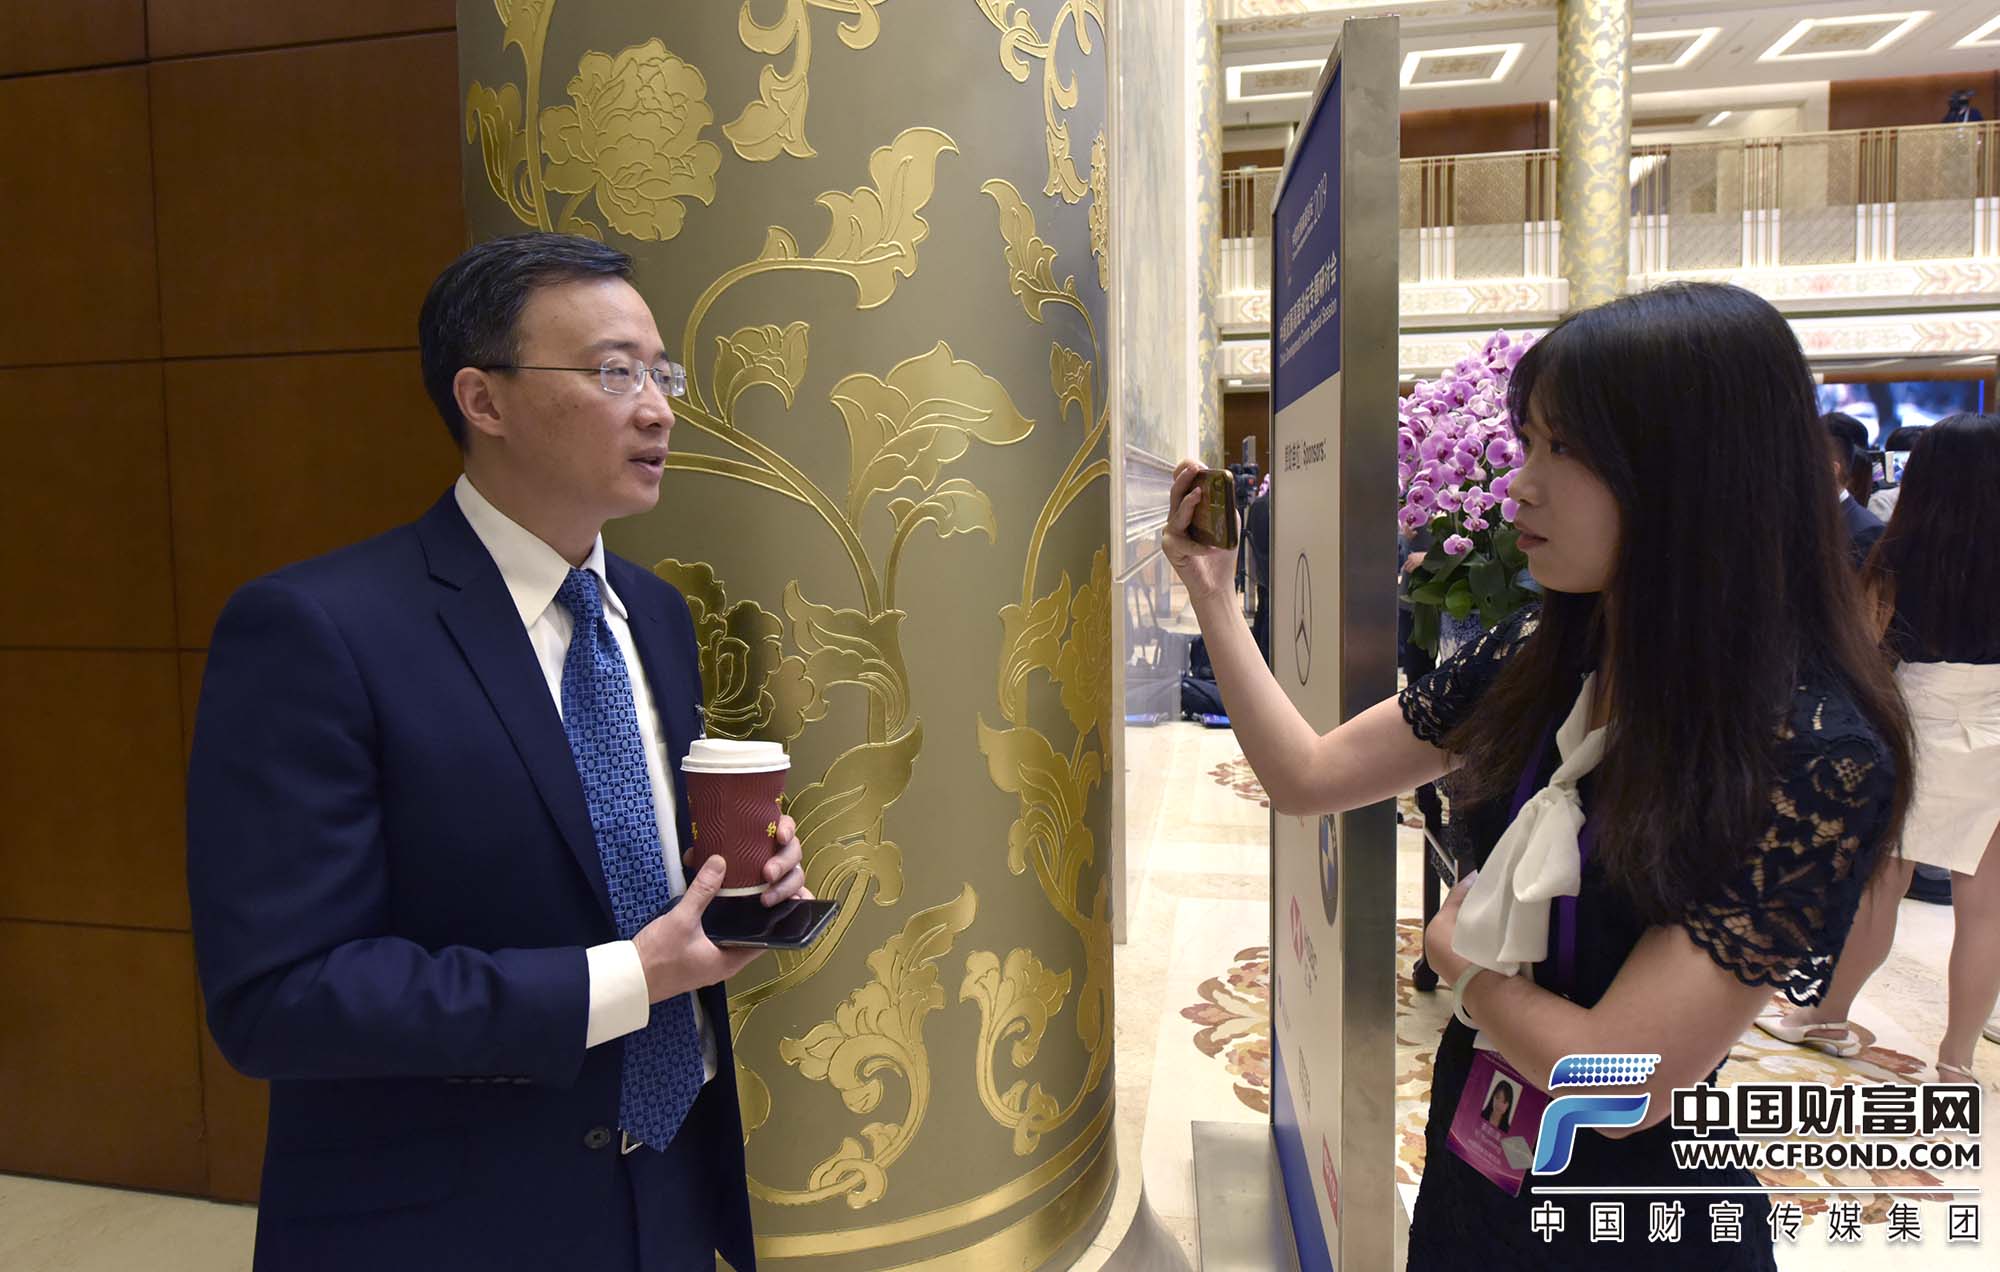 京东集团副总裁、京东数字科技首席经济学家沈建光接受采访